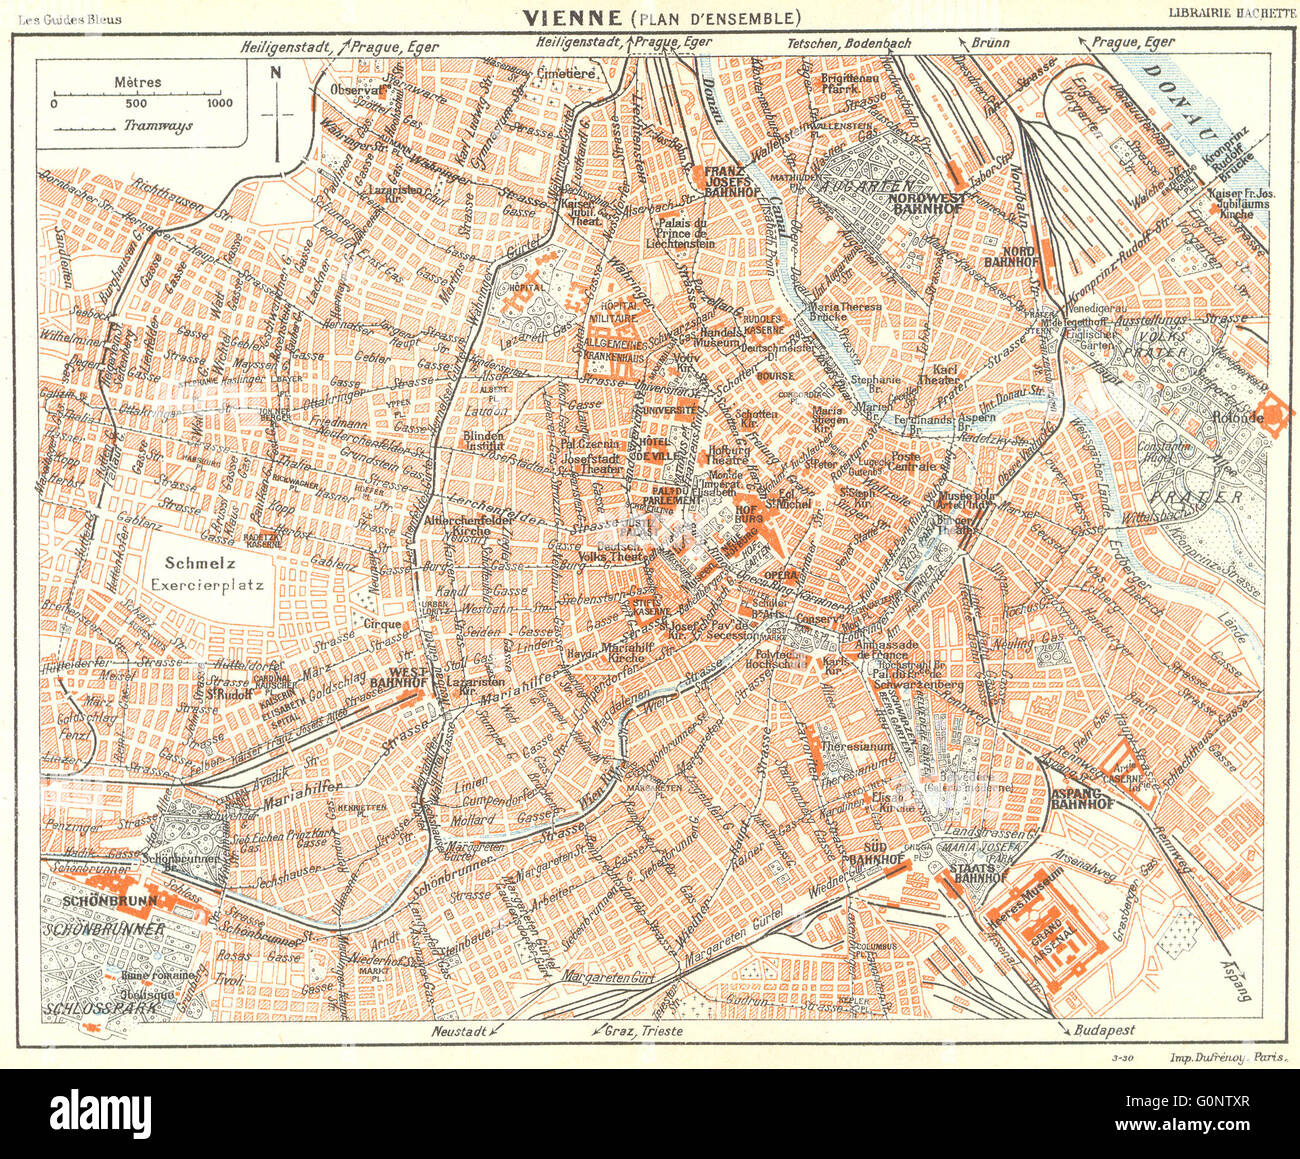 AUSTRIA: Vienne: Vienna, 1914 antique map Stock Photo